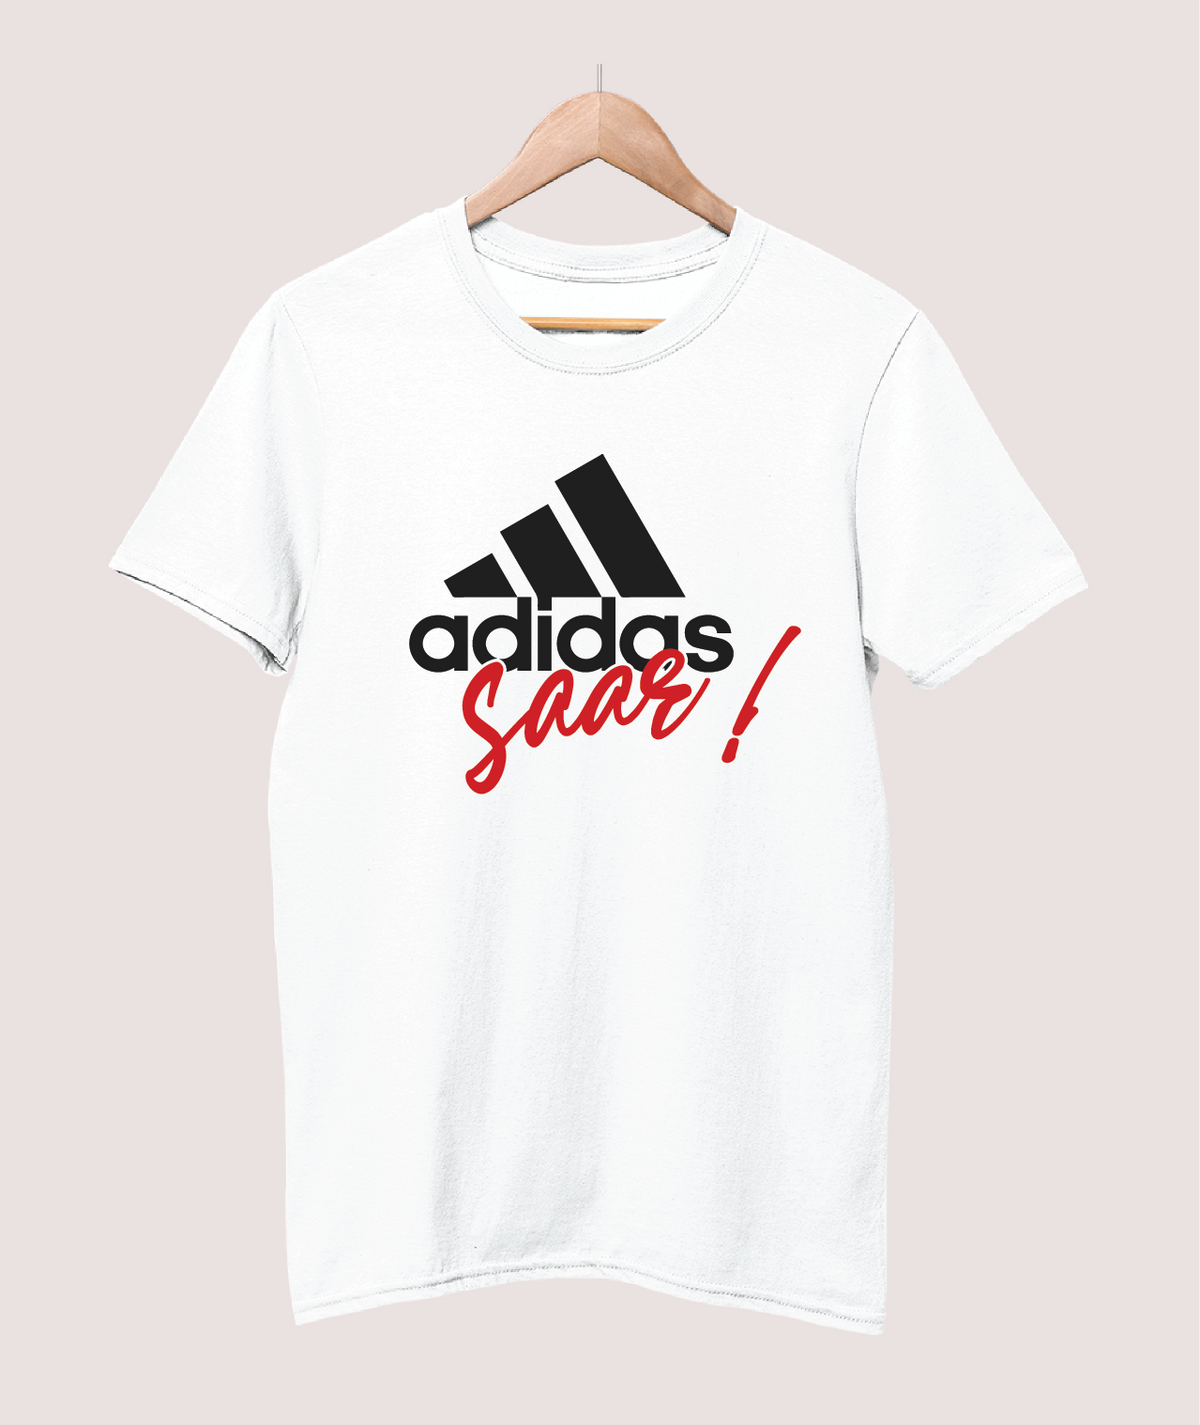 Adidas Saar T-shirt